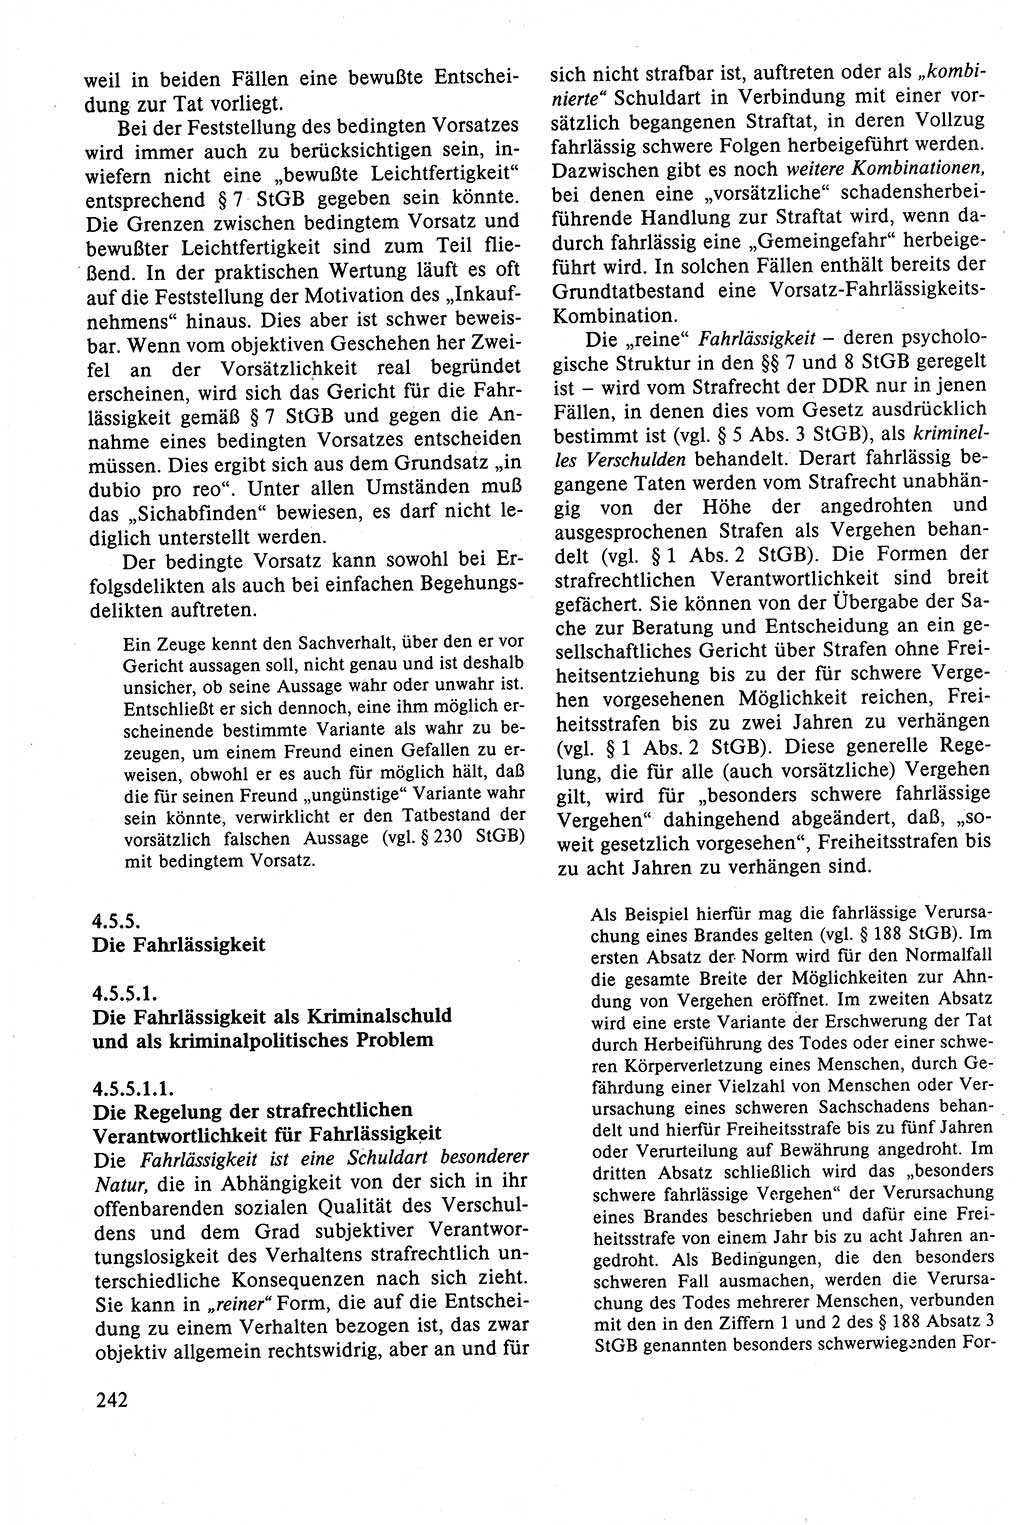 Strafrecht der DDR (Deutsche Demokratische Republik), Lehrbuch 1988, Seite 242 (Strafr. DDR Lb. 1988, S. 242)